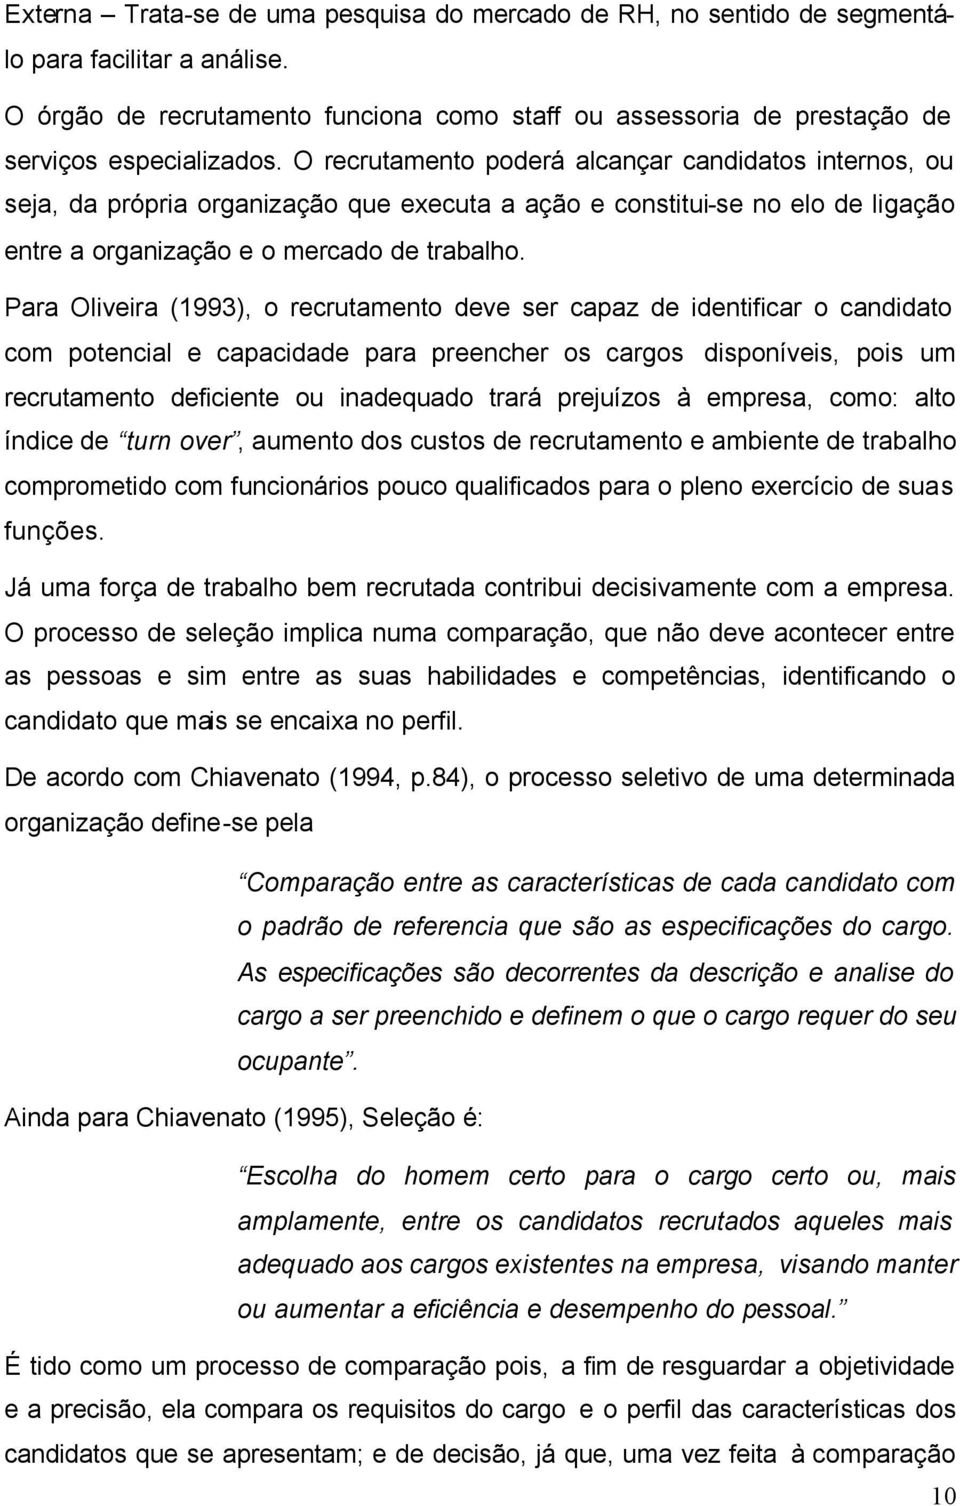 Para Oliveira (1993), o recrutamento deve ser capaz de identificar o candidato com potencial e capacidade para preencher os cargos disponíveis, pois um recrutamento deficiente ou inadequado trará